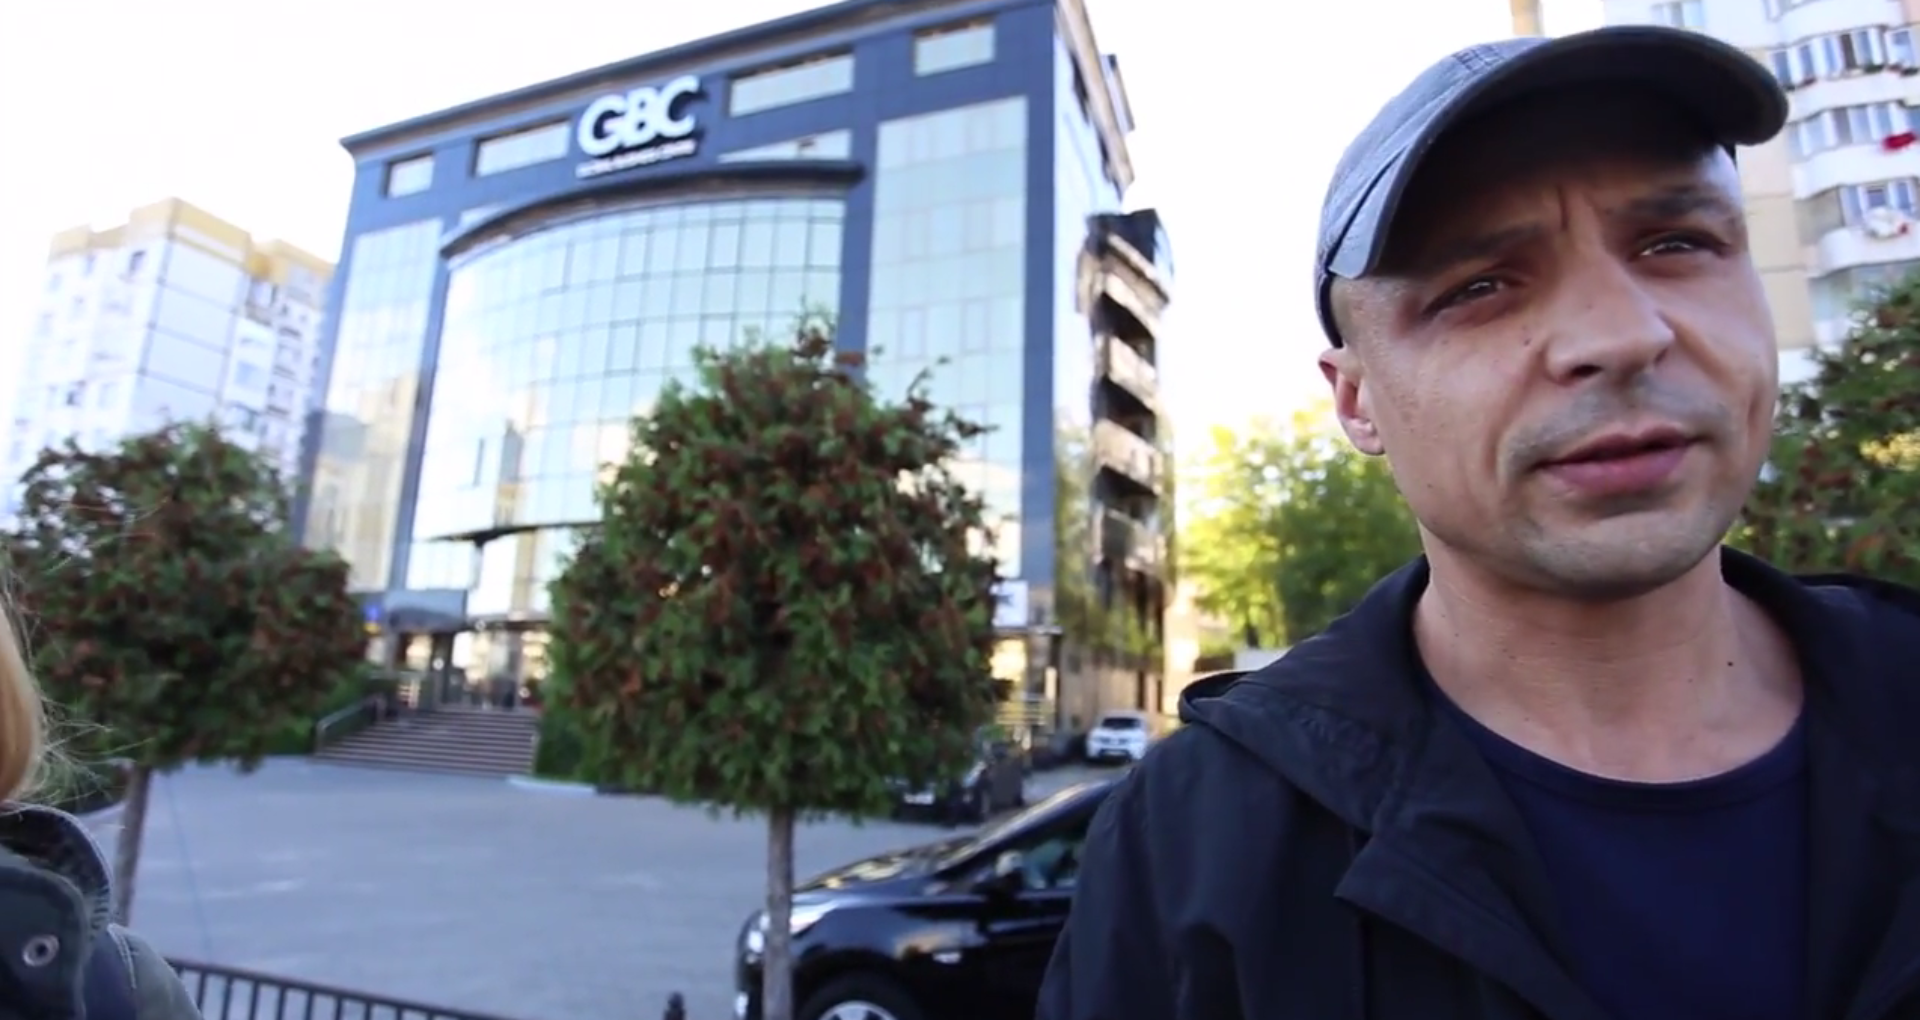 (VIDEO) Reporteri ZdG somați și amenințați în spațiul public, pe strada din preajma clădirii GBC